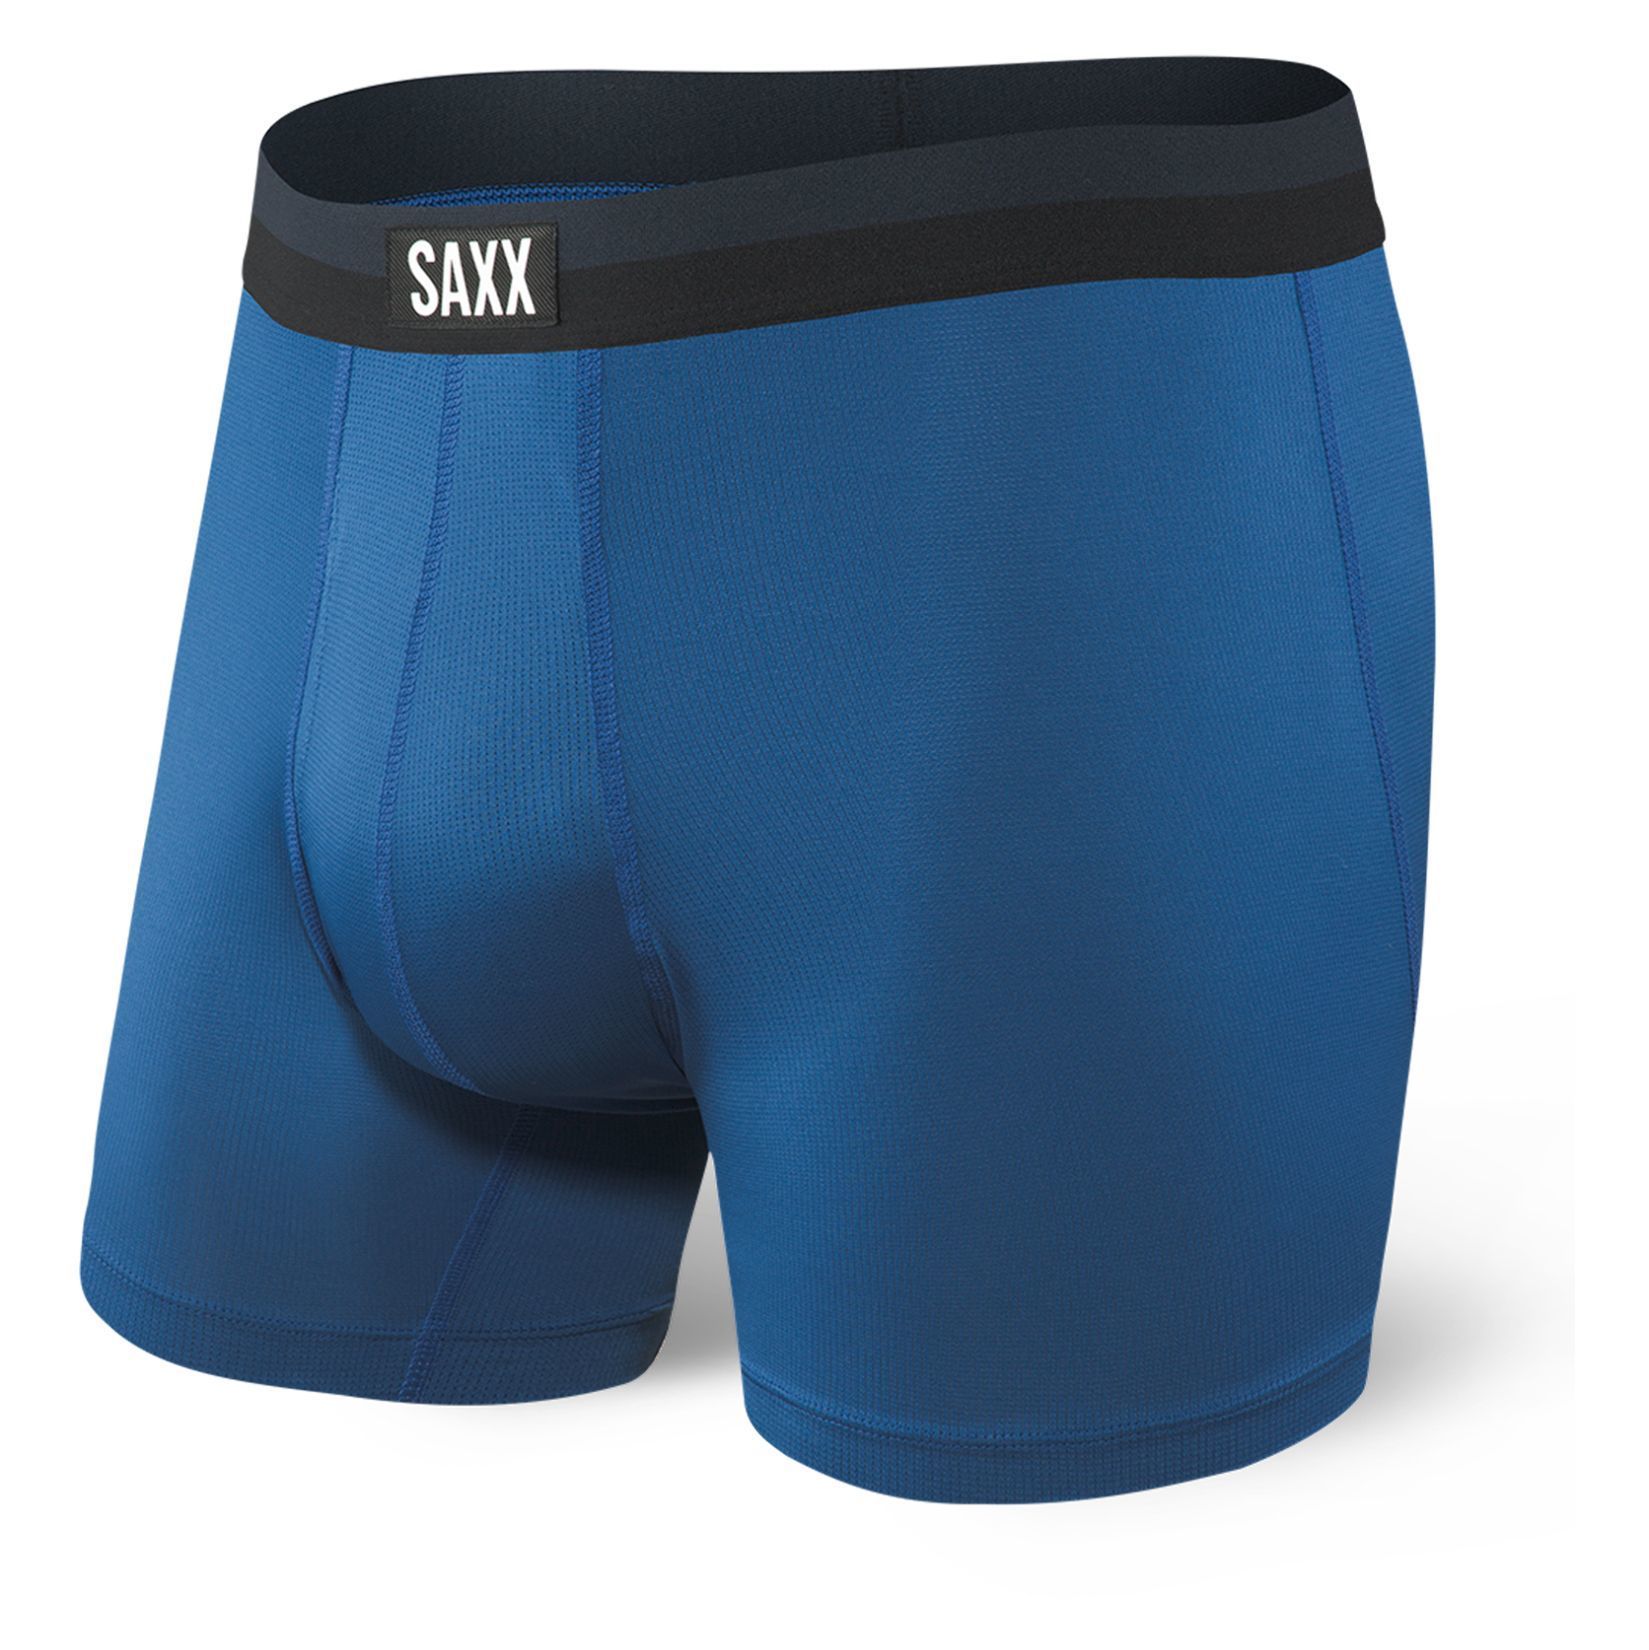 SAXX Sport Mesh Boxer Brief | Underwear | Kitlocker.com